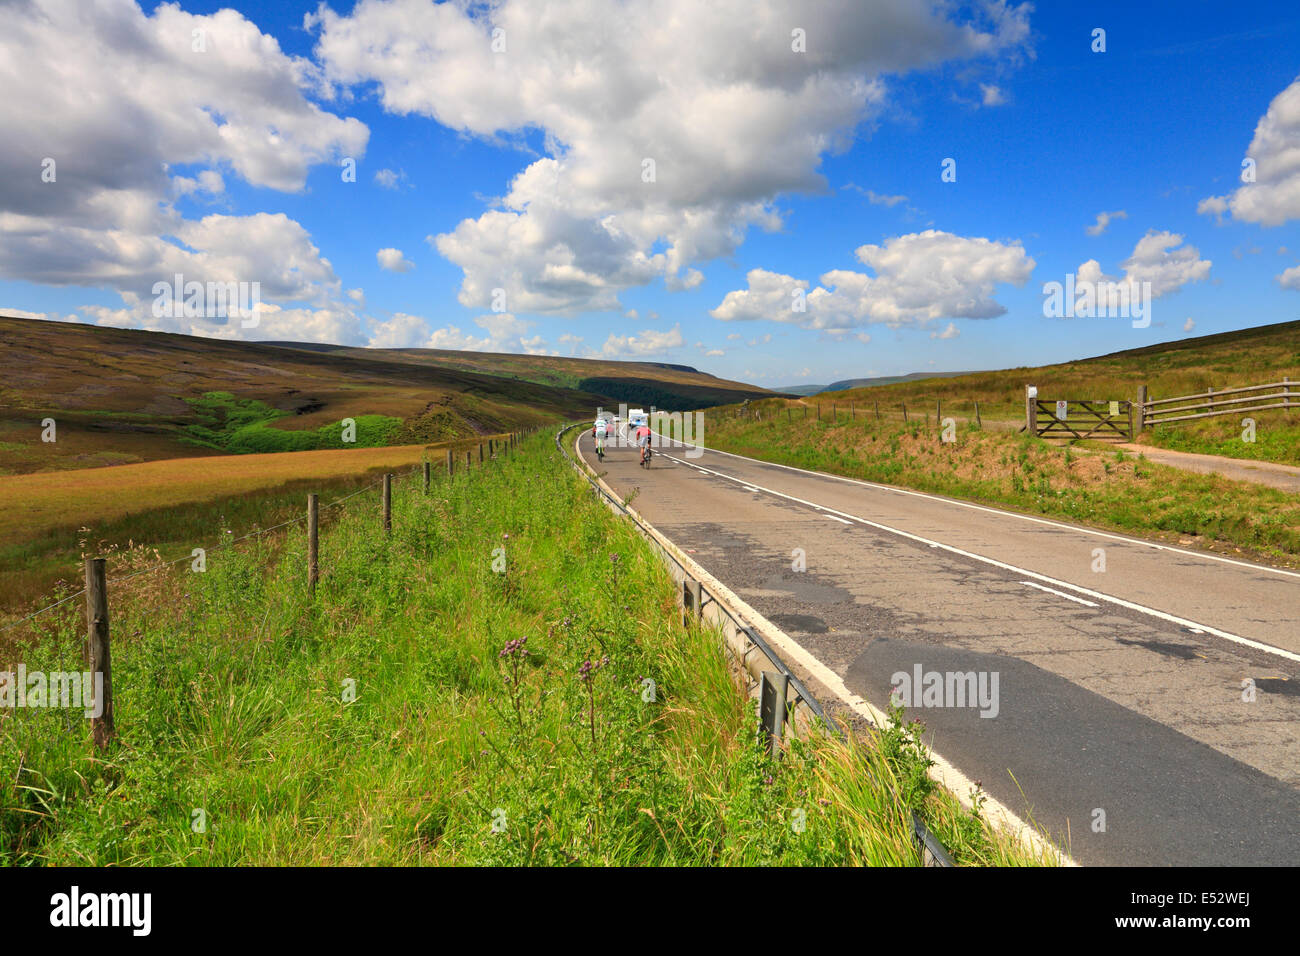 Le trafic passe dans Longdendale Woodhead, Derbyshire Peak District National Park, Angleterre, Royaume-Uni. Banque D'Images